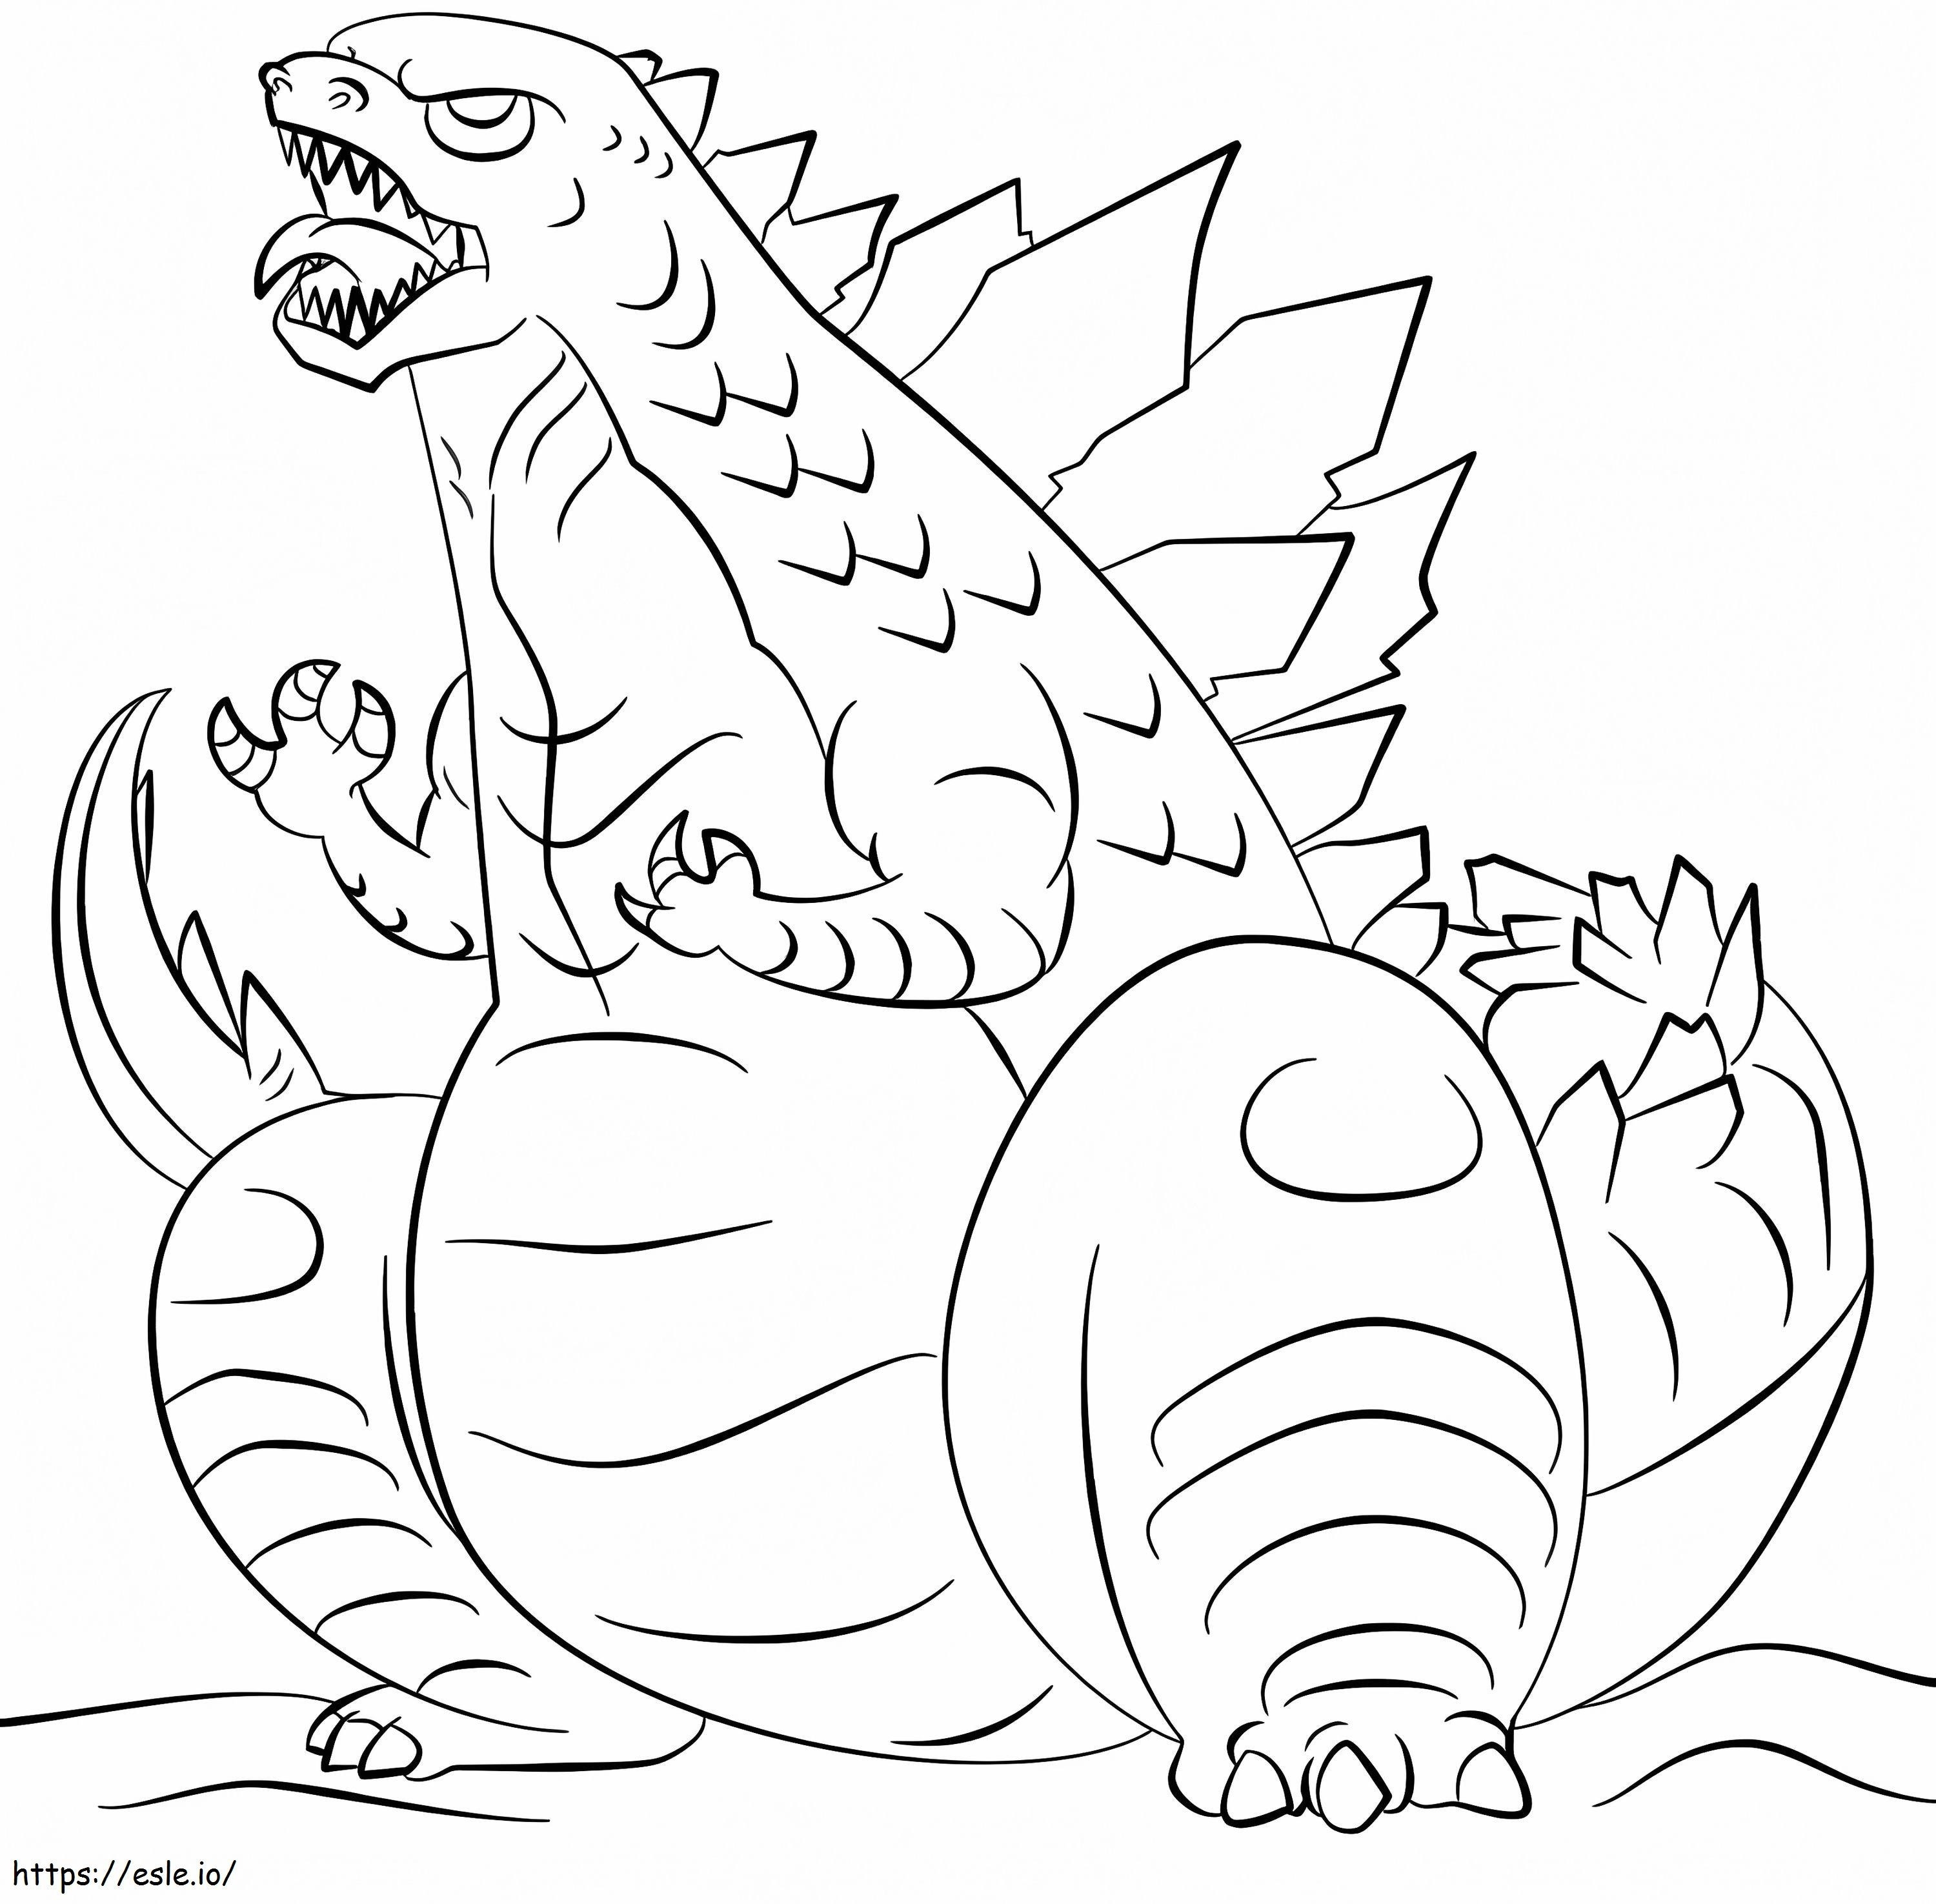 Godzilla Sitting coloring page